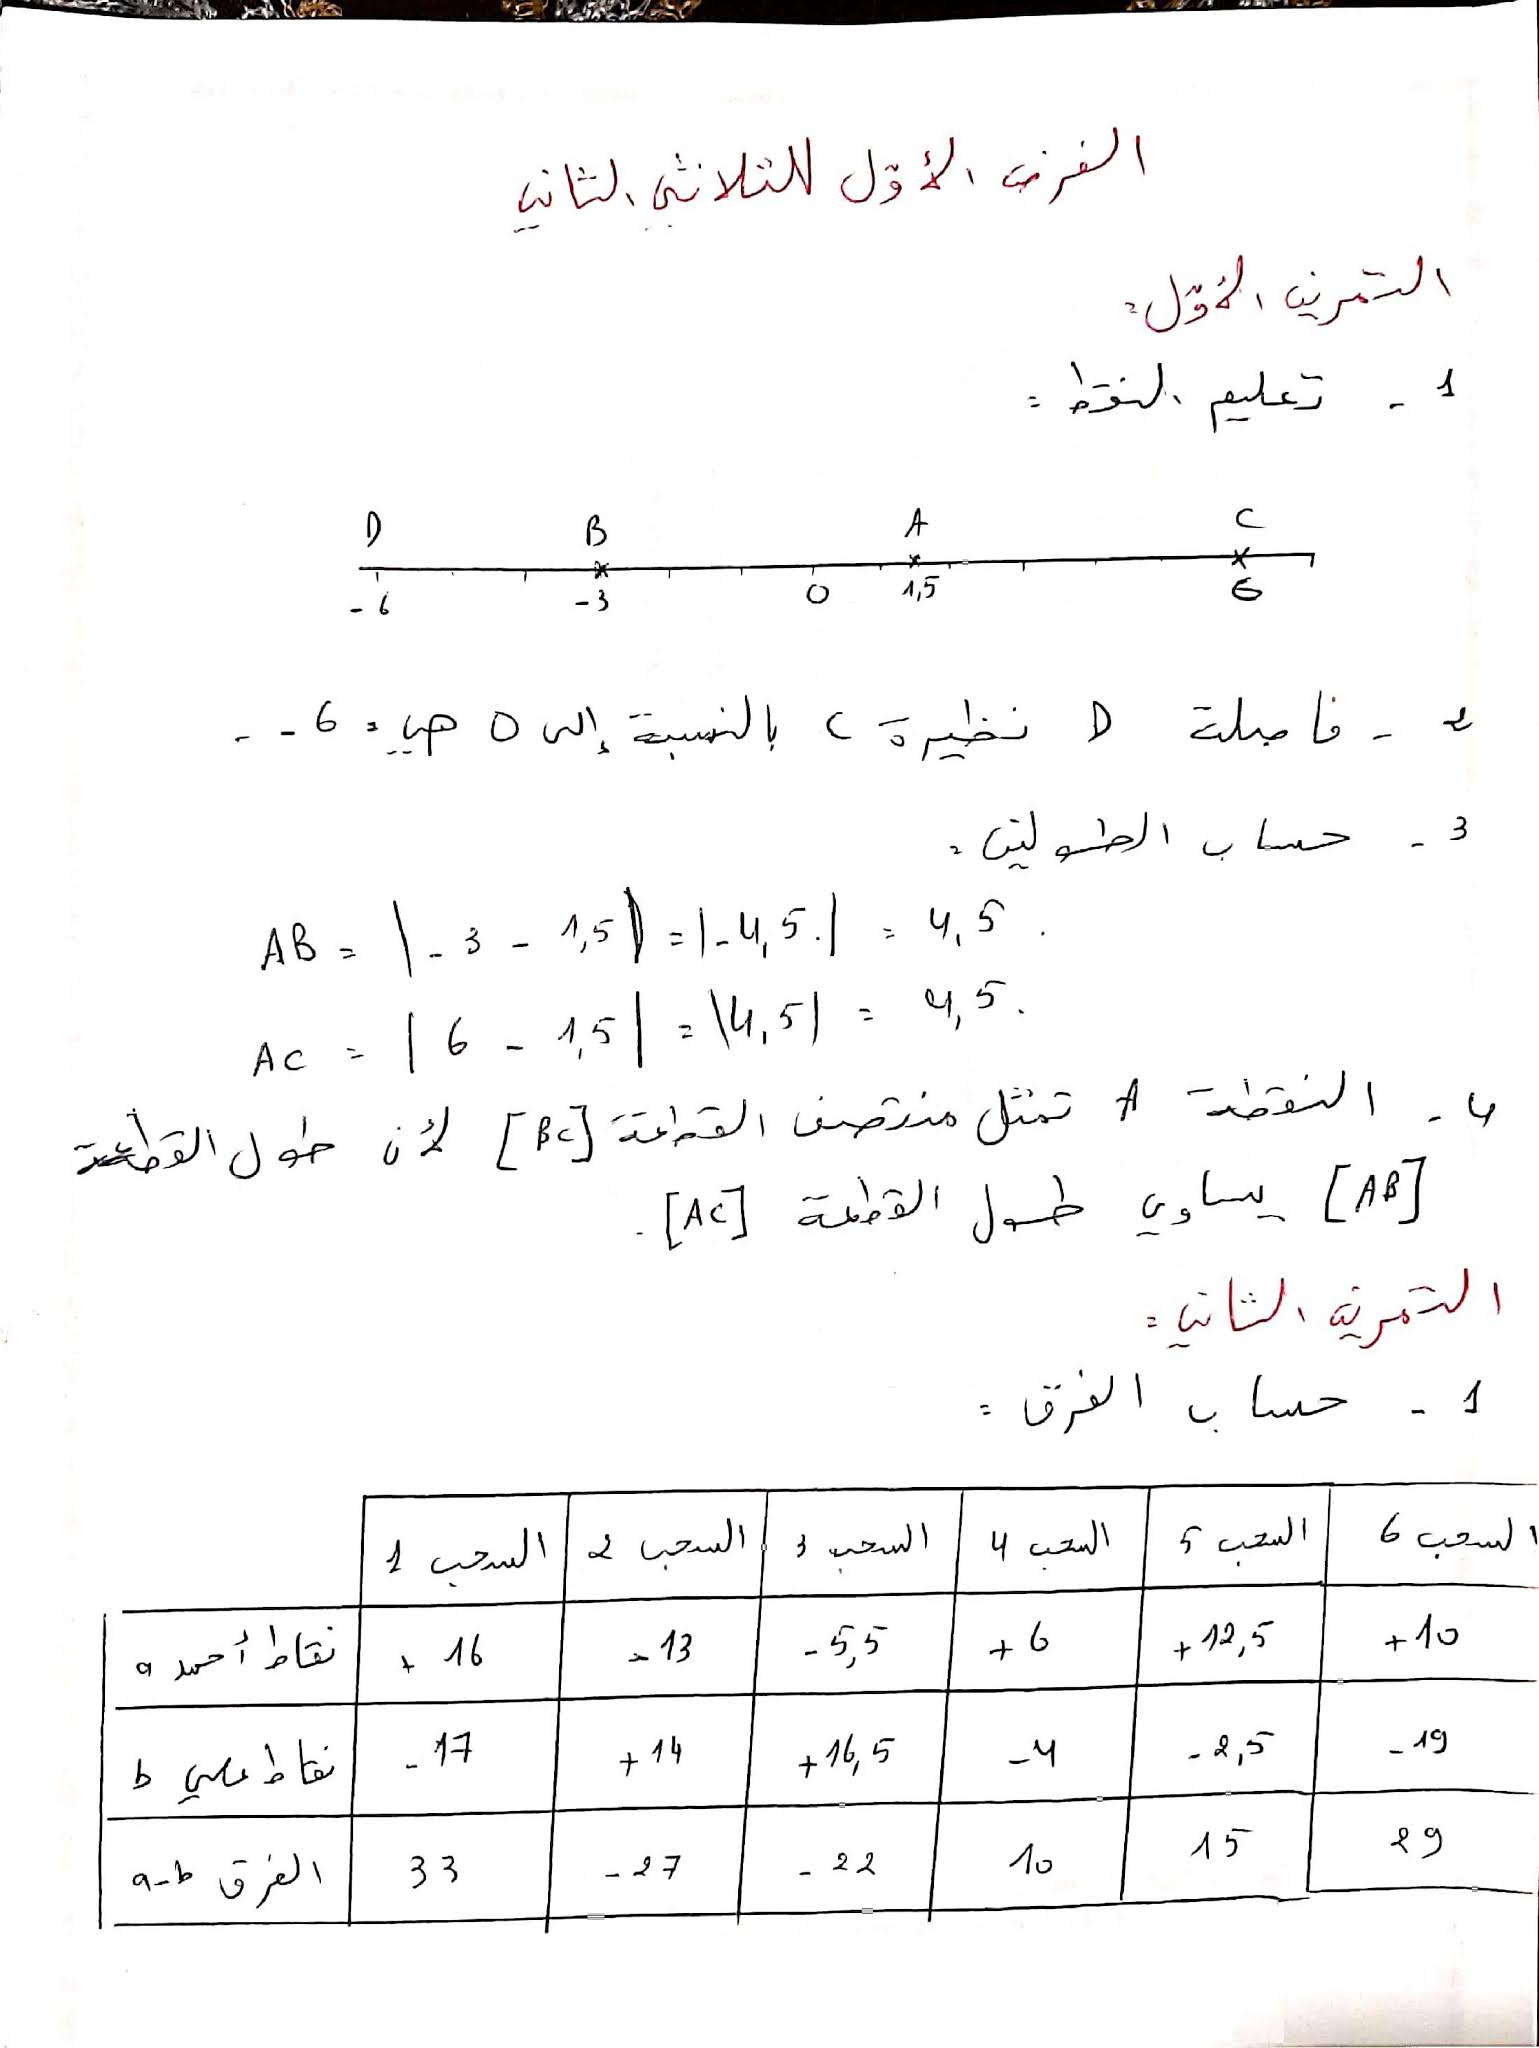 فرض الرياضيات الفصل الثاني للسنة الثانية متوسط - الجيل الثاني نموذج 5